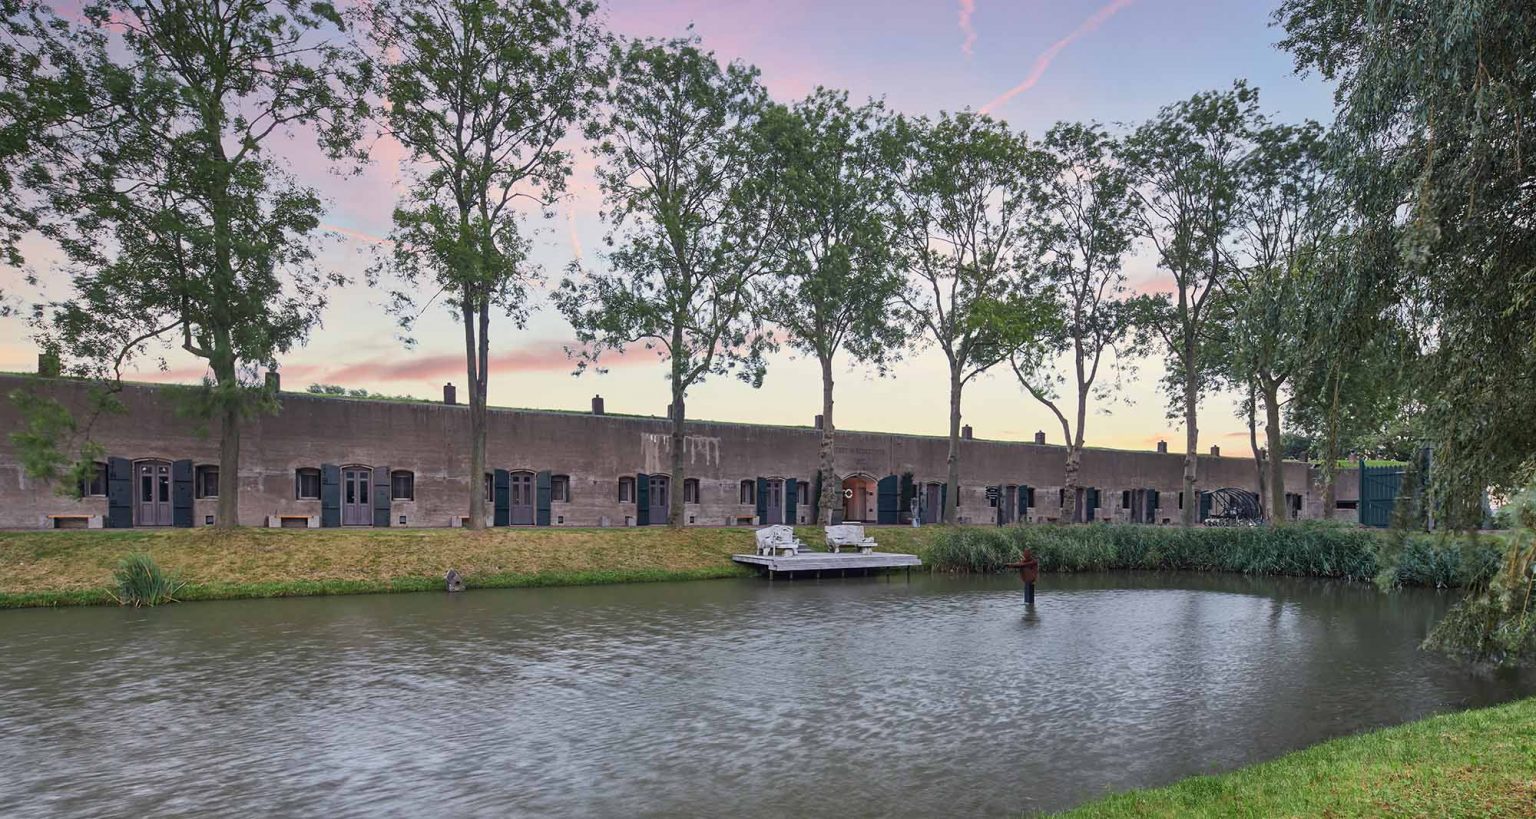 Fort Resort Beemster, voorheen Fort aan de Nekkerweg, onderdeel van de Stelling van Amsterdam en UNESCO werelderfgoed.